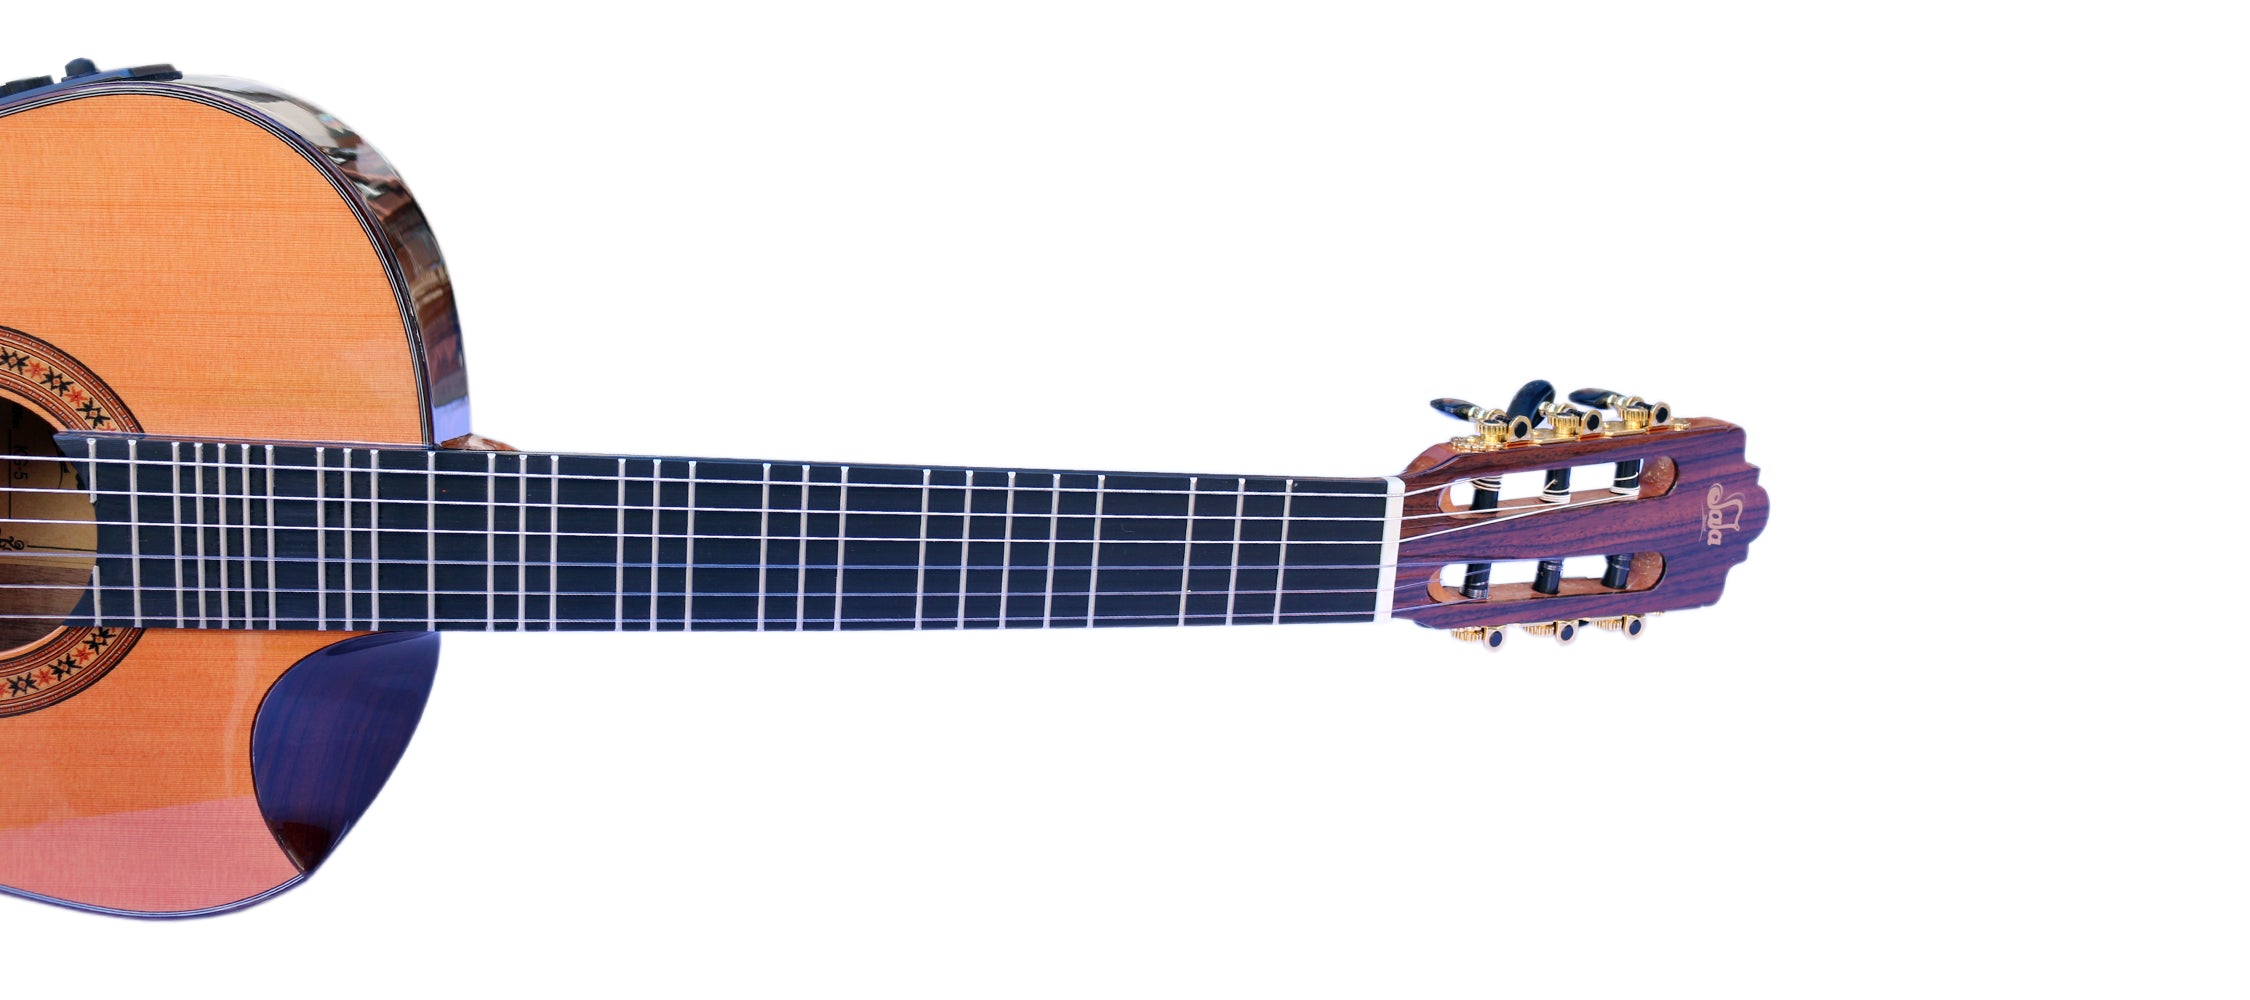 گیتار کلاسیک الکتریک میکروتونال حرفه ای با اکولایزر KG-5